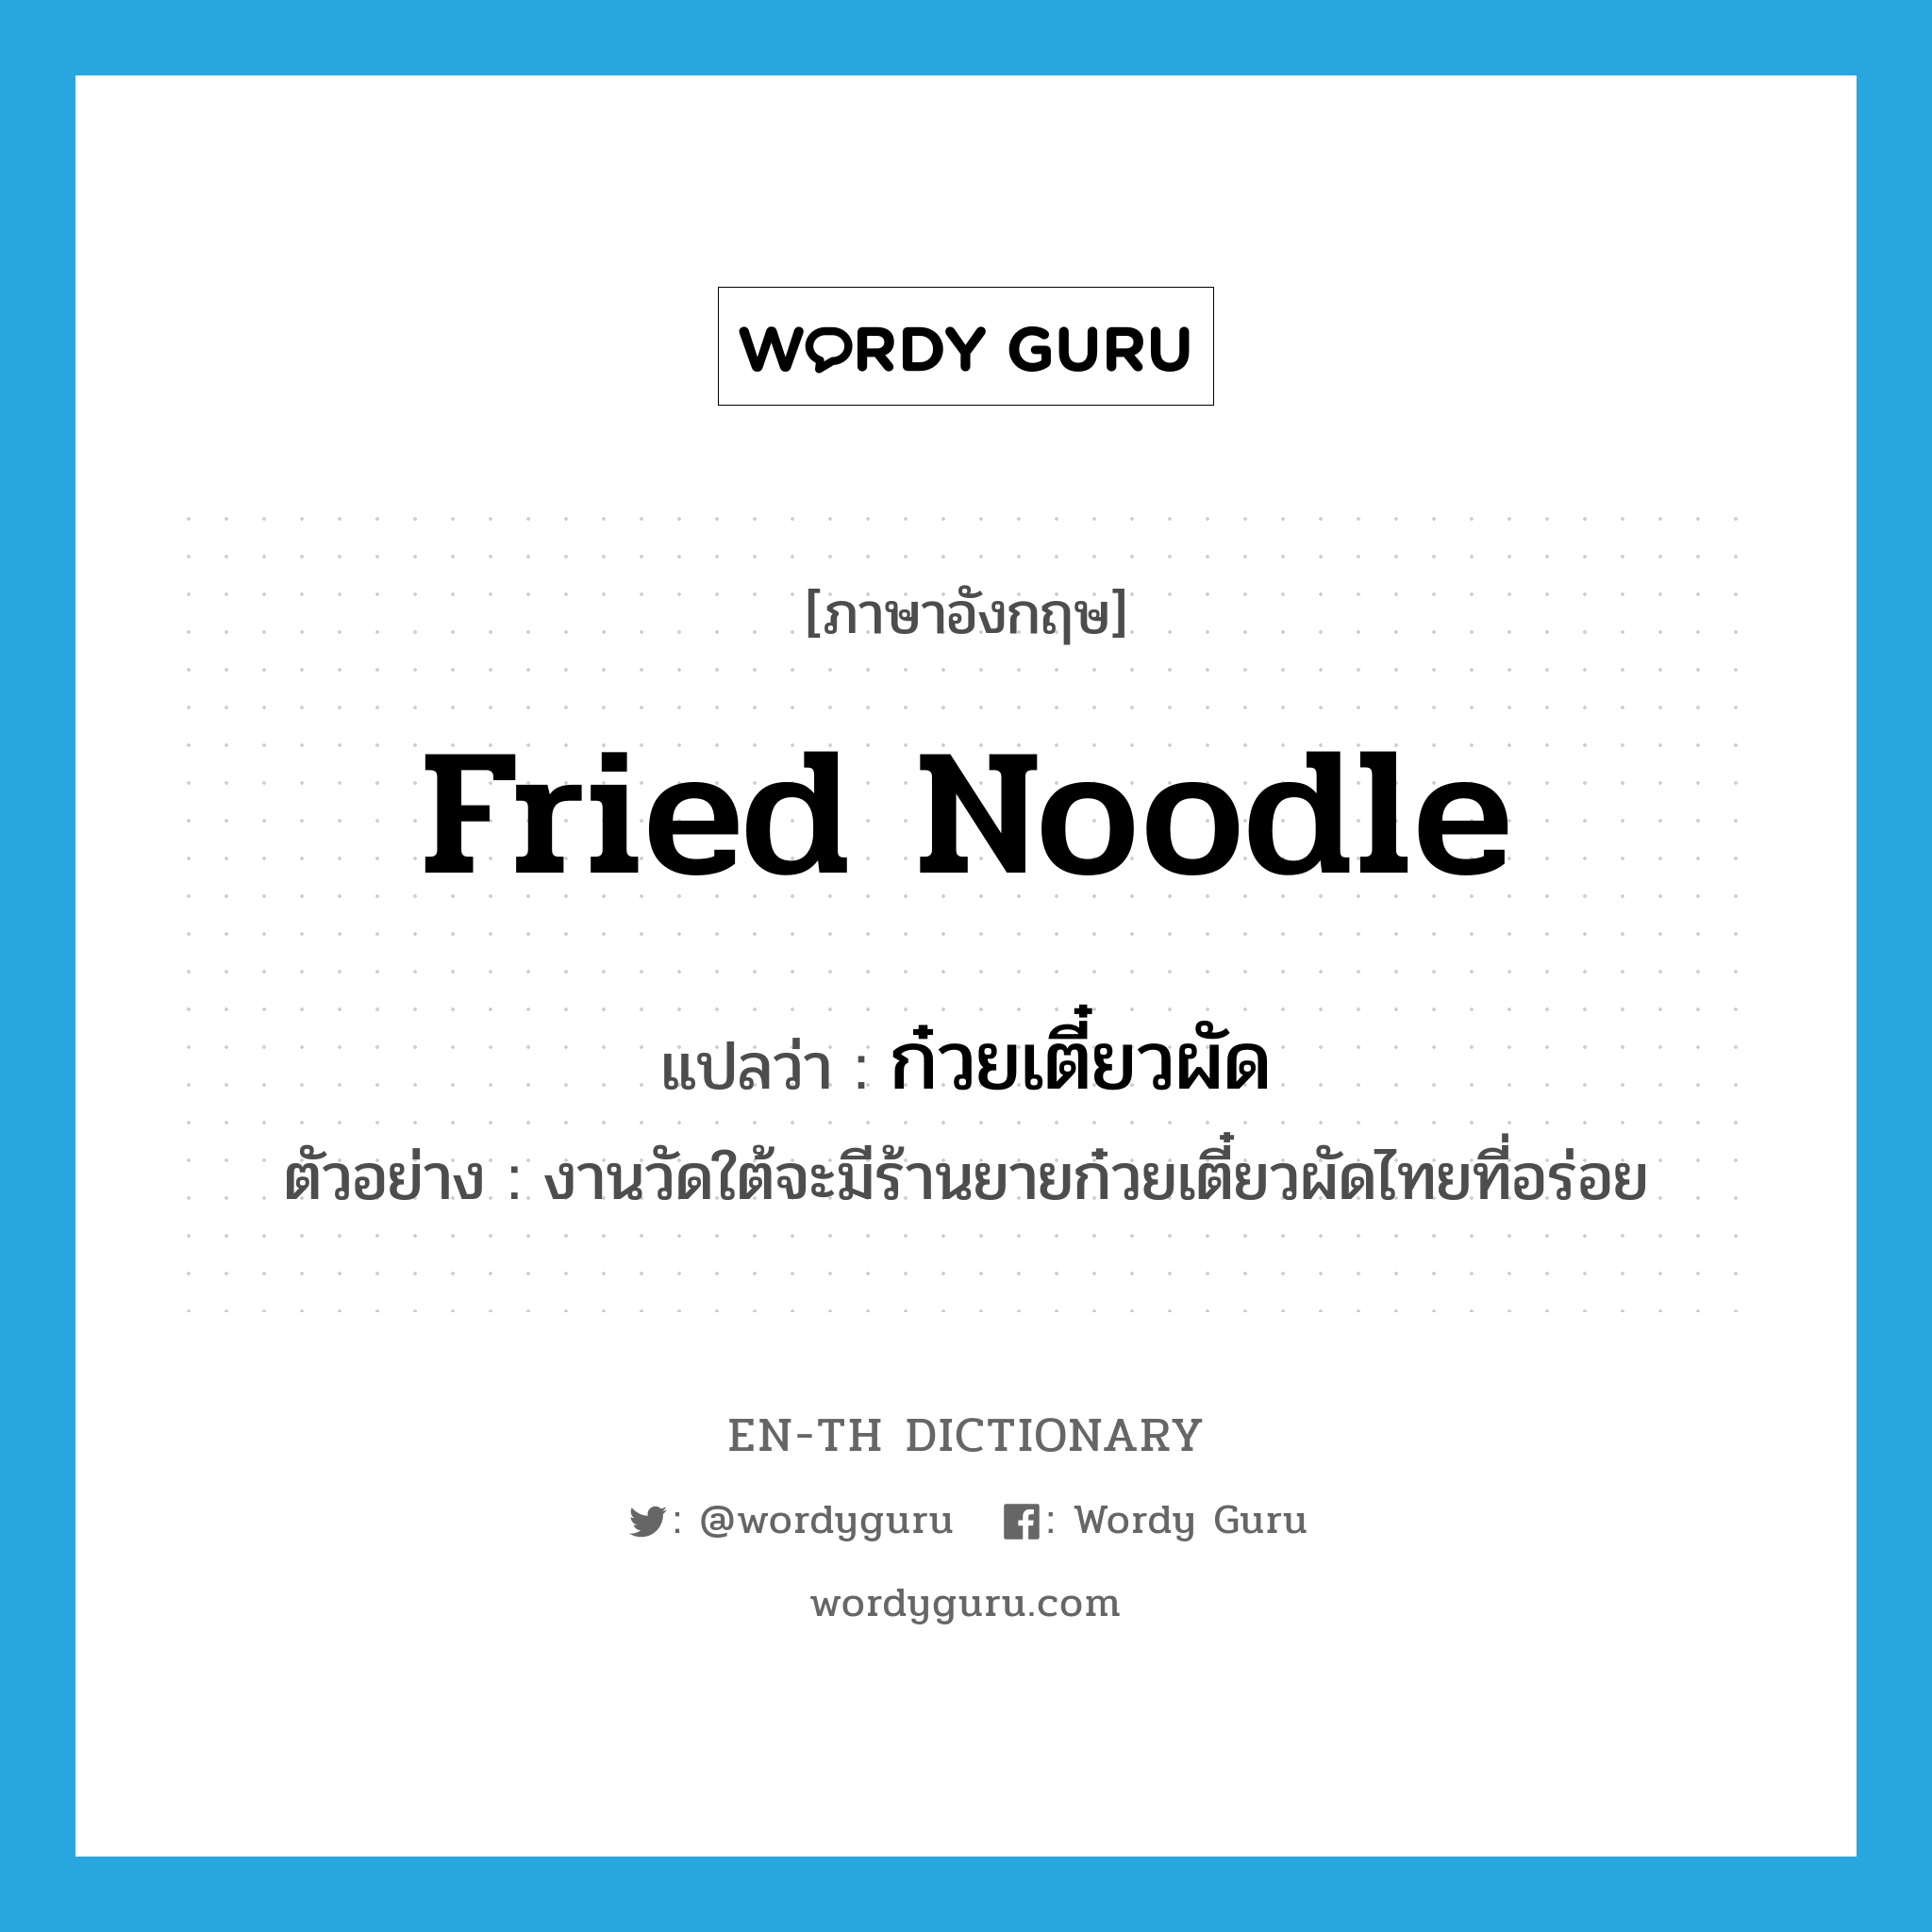 fried noodle แปลว่า?, คำศัพท์ภาษาอังกฤษ fried noodle แปลว่า ก๋วยเตี๋ยวผัด ประเภท N ตัวอย่าง งานวัดใต้จะมีร้านยายก๋วยเตี๋ยวผัดไทยที่อร่อย หมวด N